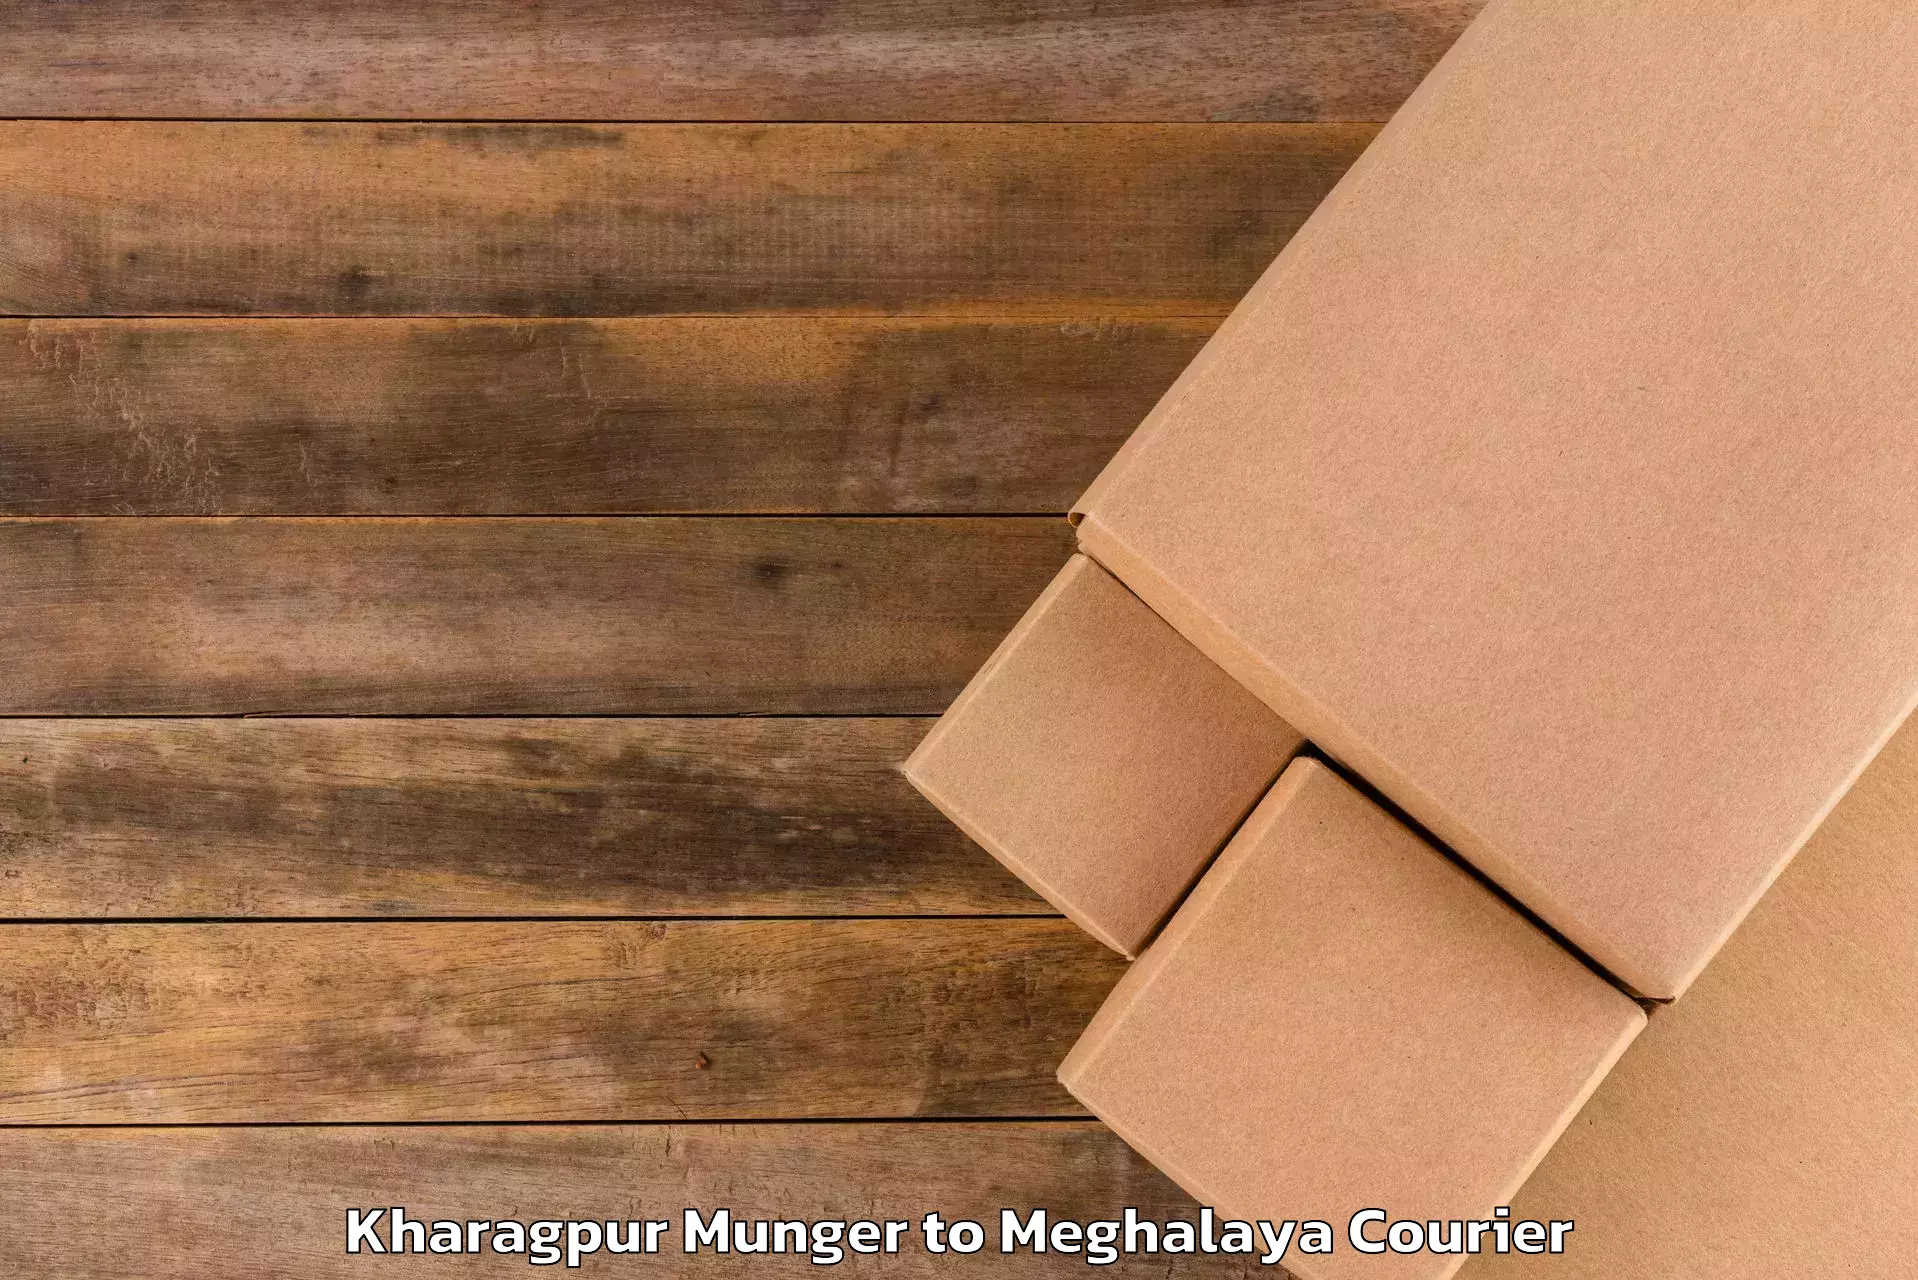 Baggage transport estimate Kharagpur Munger to Meghalaya